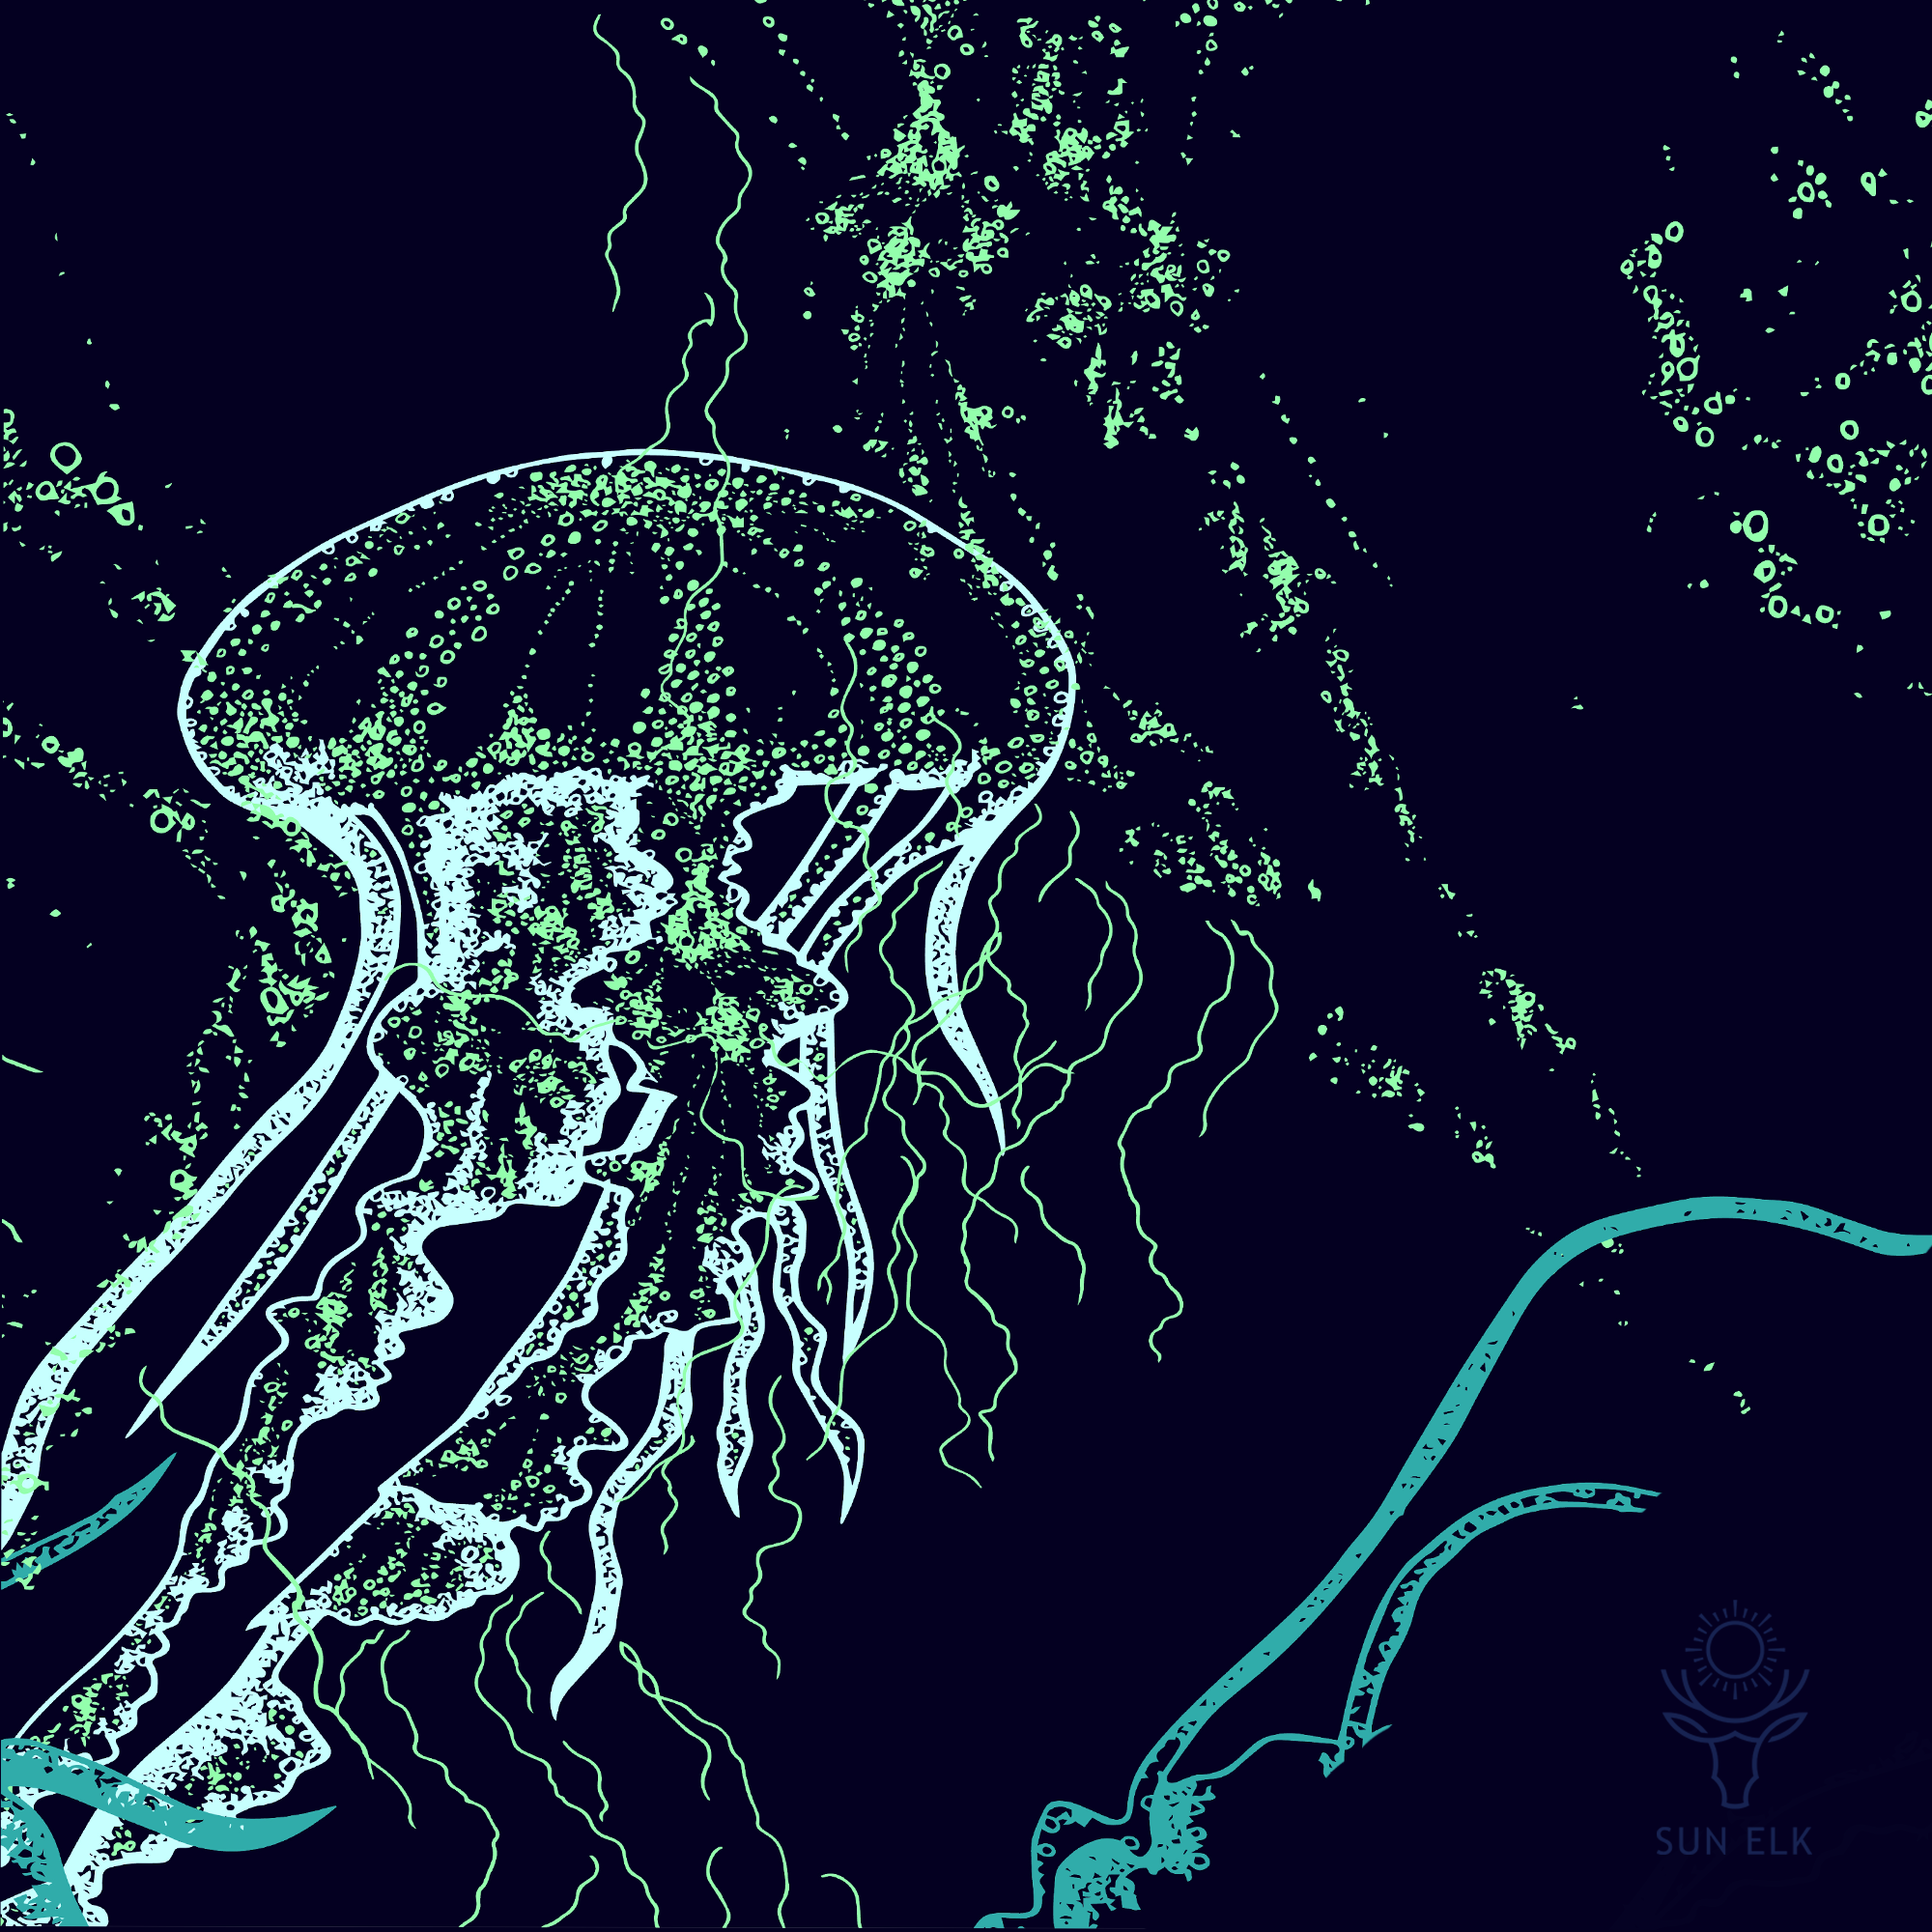 Wild Jellyfish Men's Eco Friendly Swim Trunks